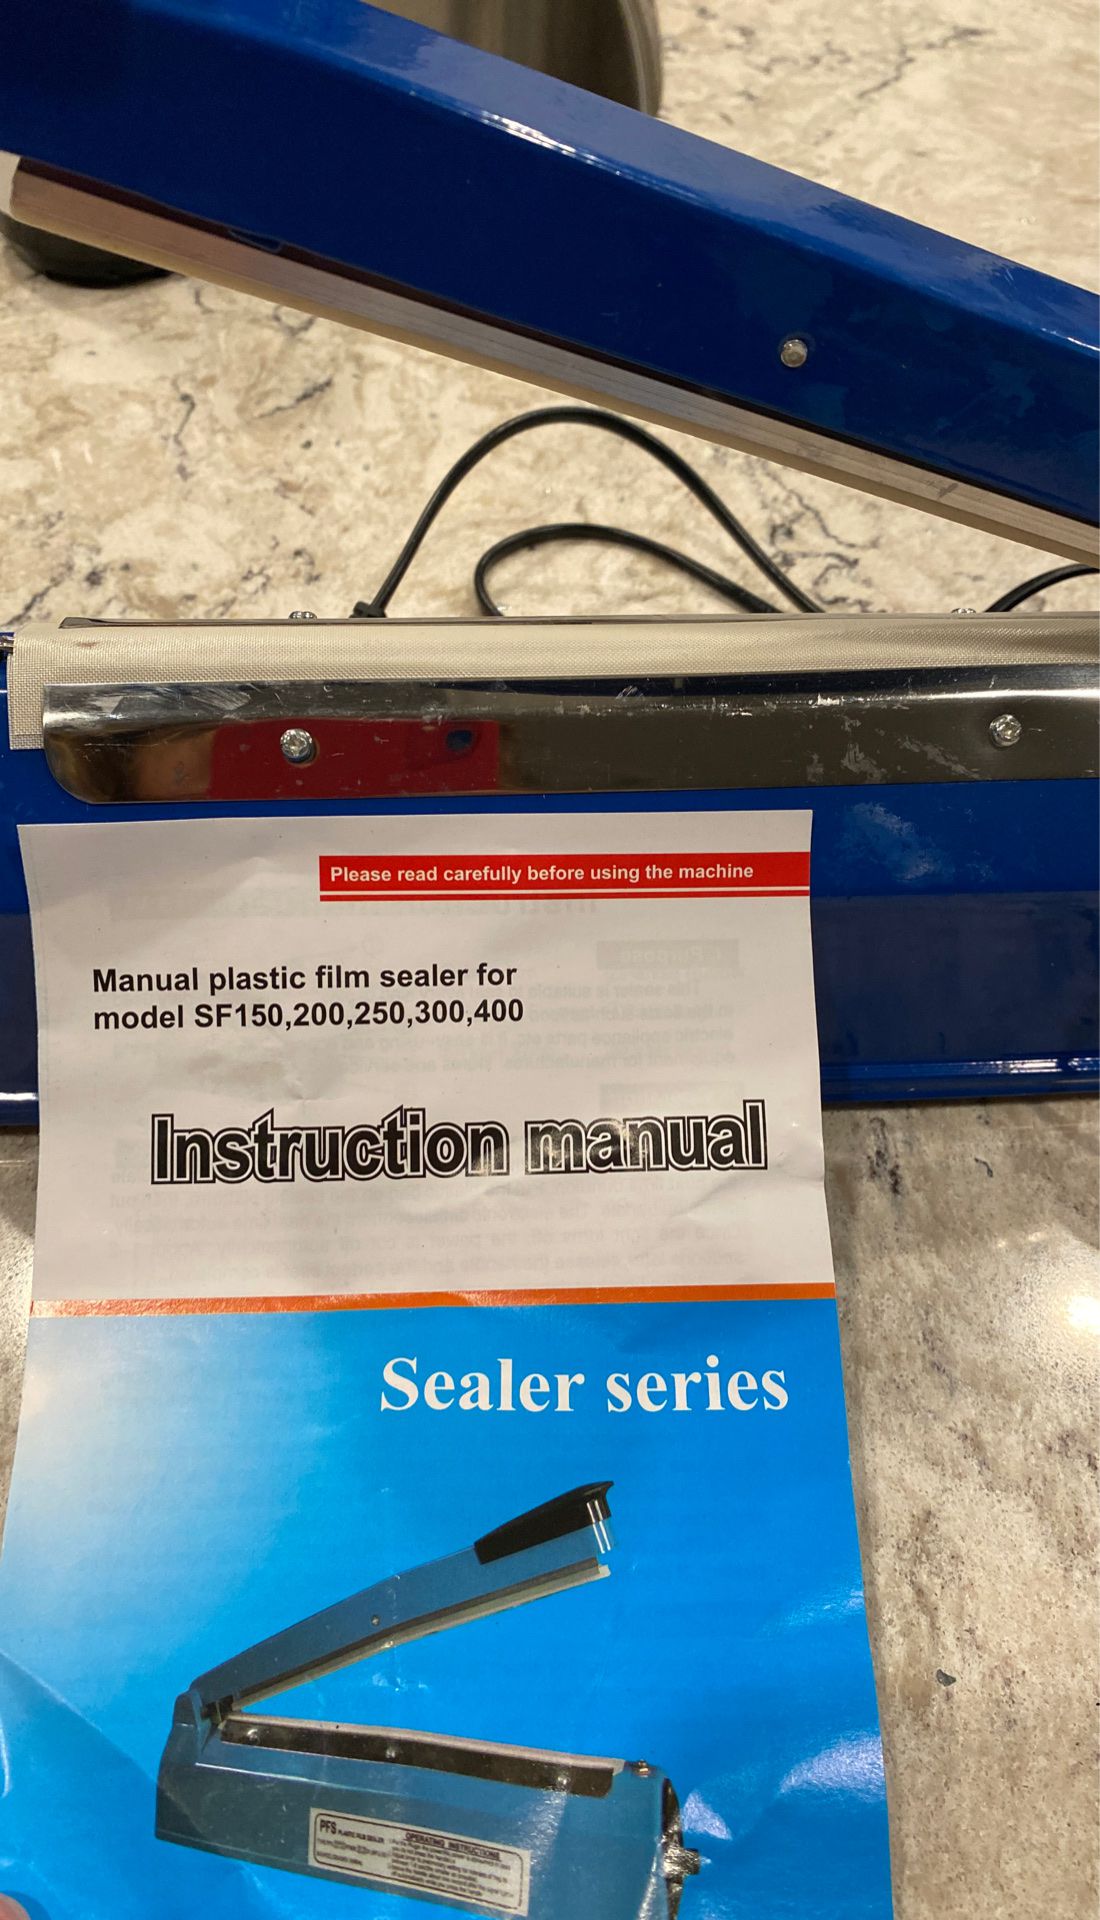 Manual plastic film sealer